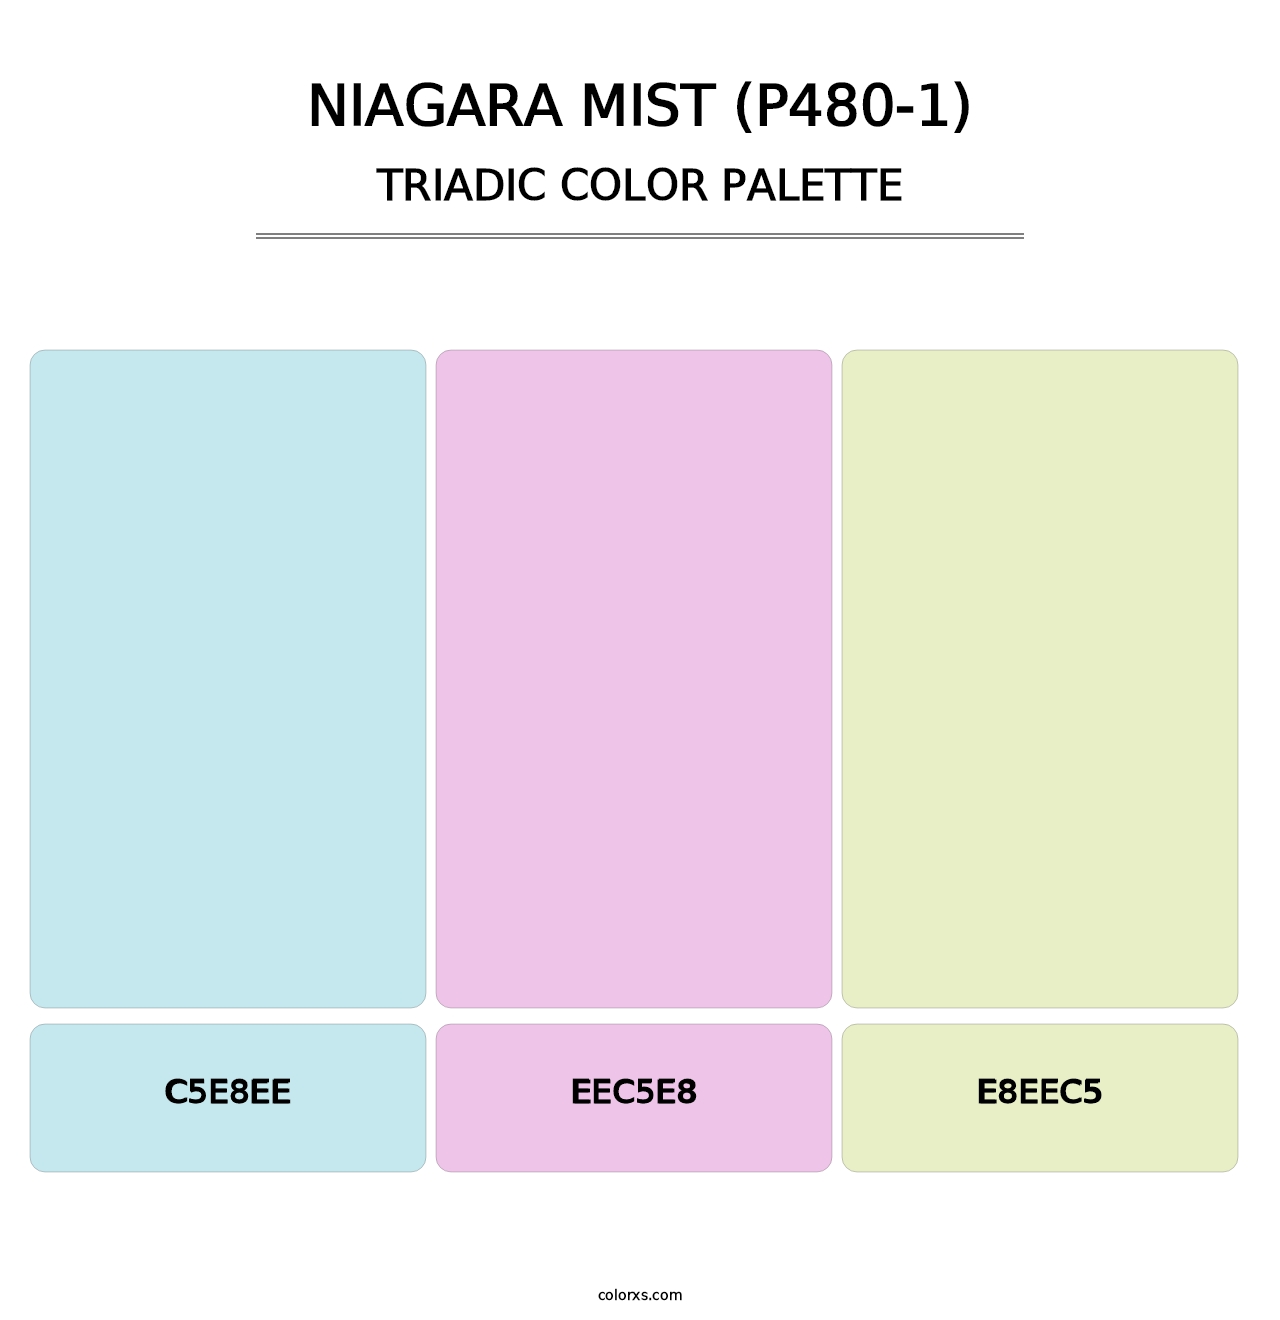 Niagara Mist (P480-1) - Triadic Color Palette